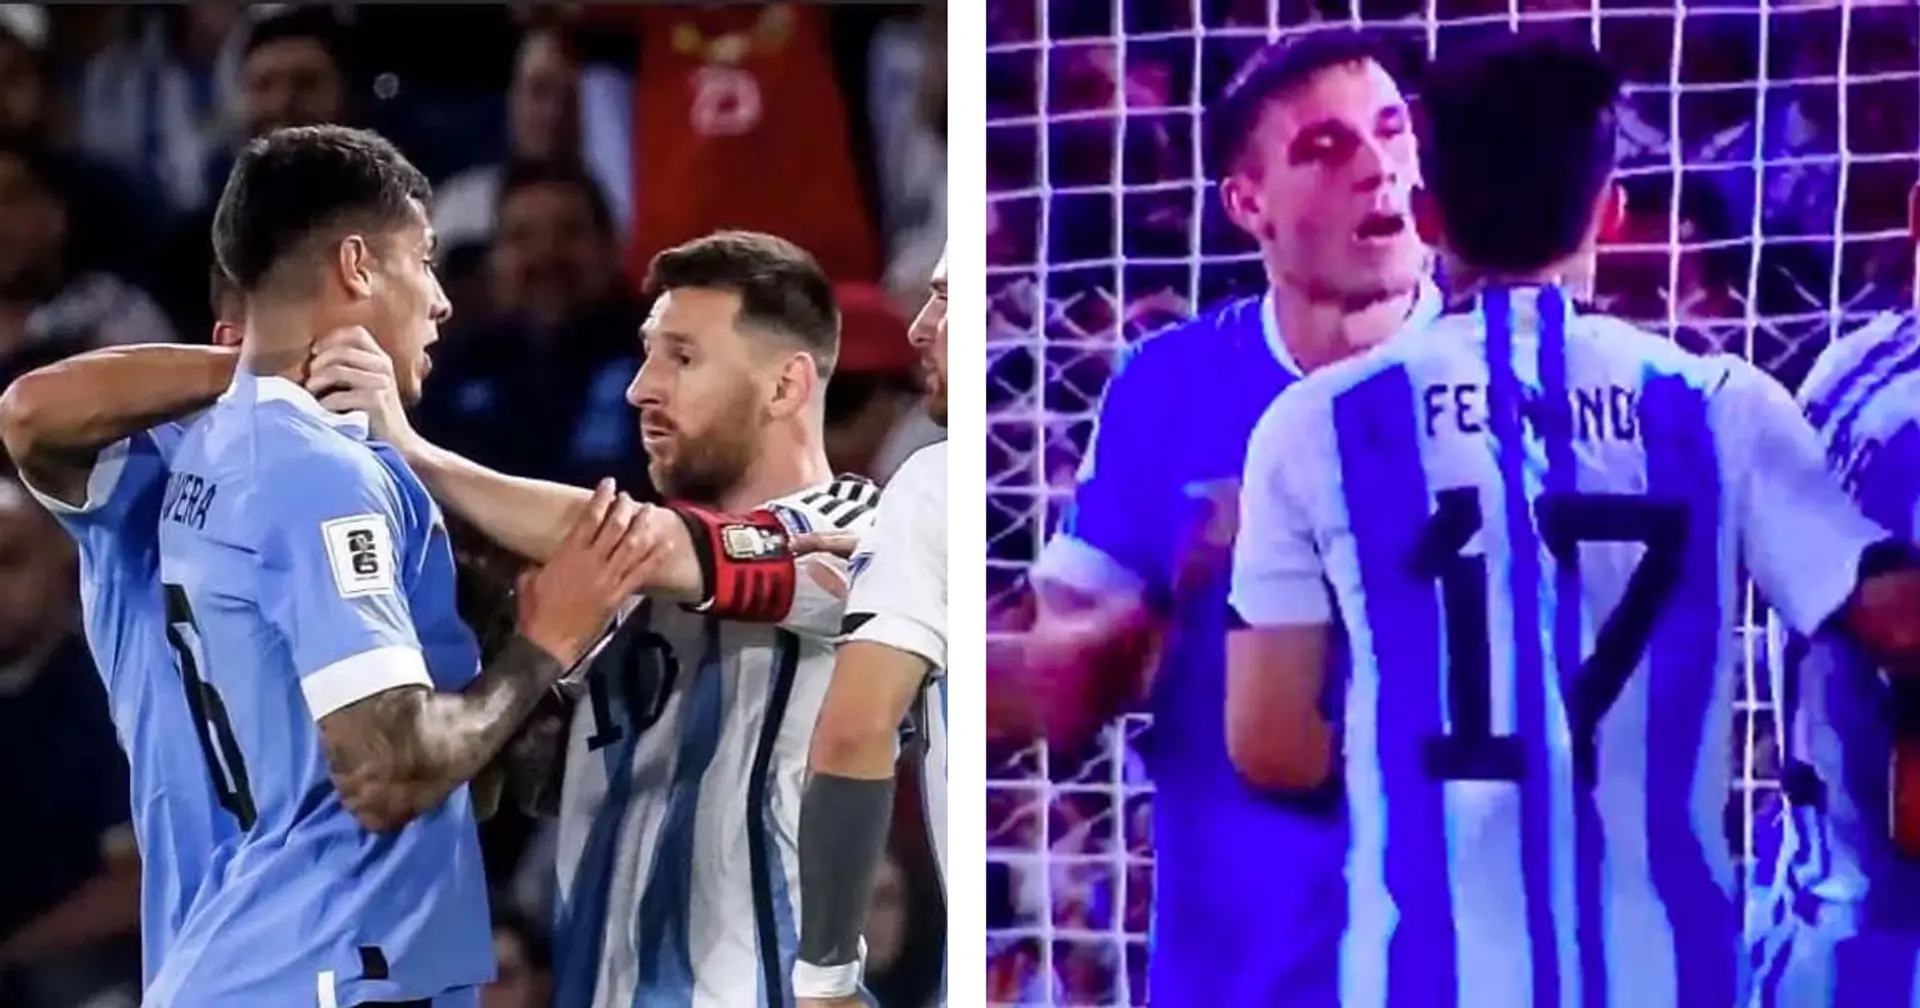 "Les jeunes doivent apprendre le respect", Leo Messi ne digère pas du tout les propos d'Ugarte sur De Paul